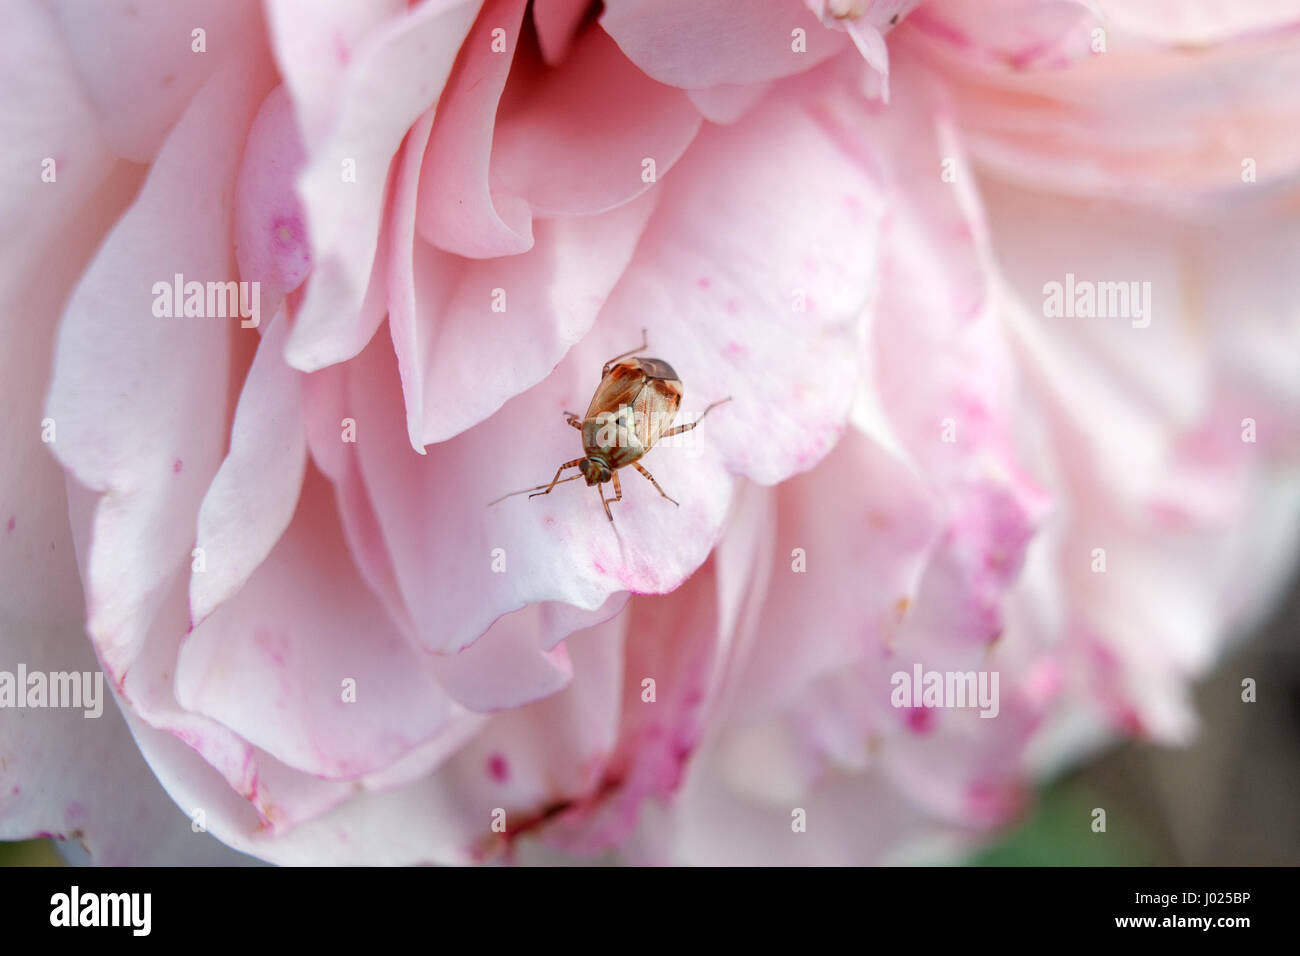 Petit bug colorés sur une rose rose. Scène de jardin close up insecte qui repose sur une rose rose. Arrière-plan flou avec l'accent sur un animal. Banque D'Images